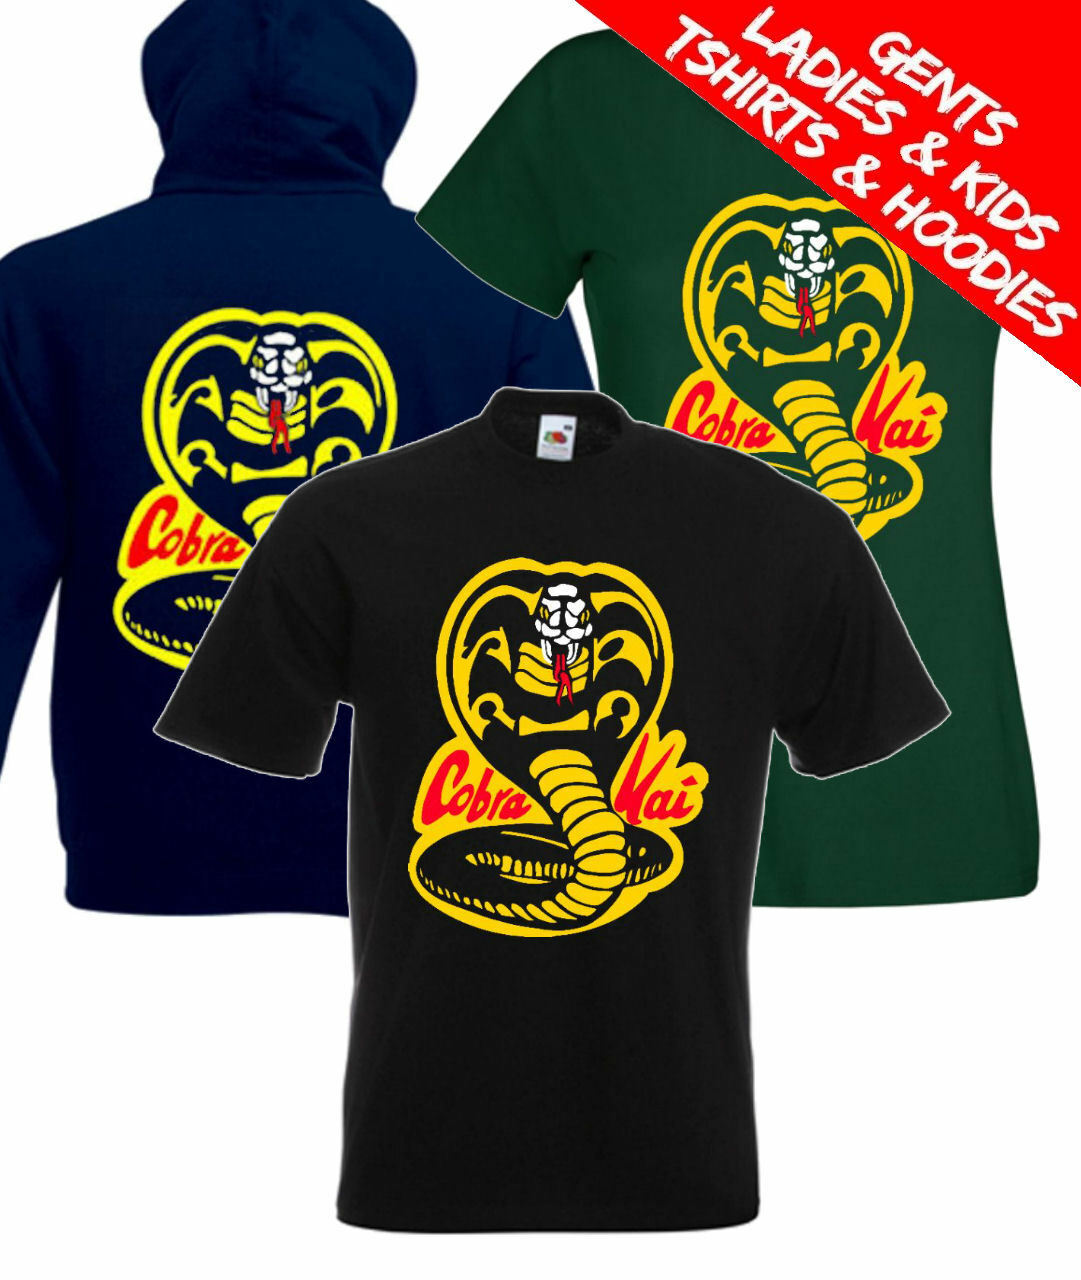 The Karate Kid Cobra Kai Vintage Sweatshirt